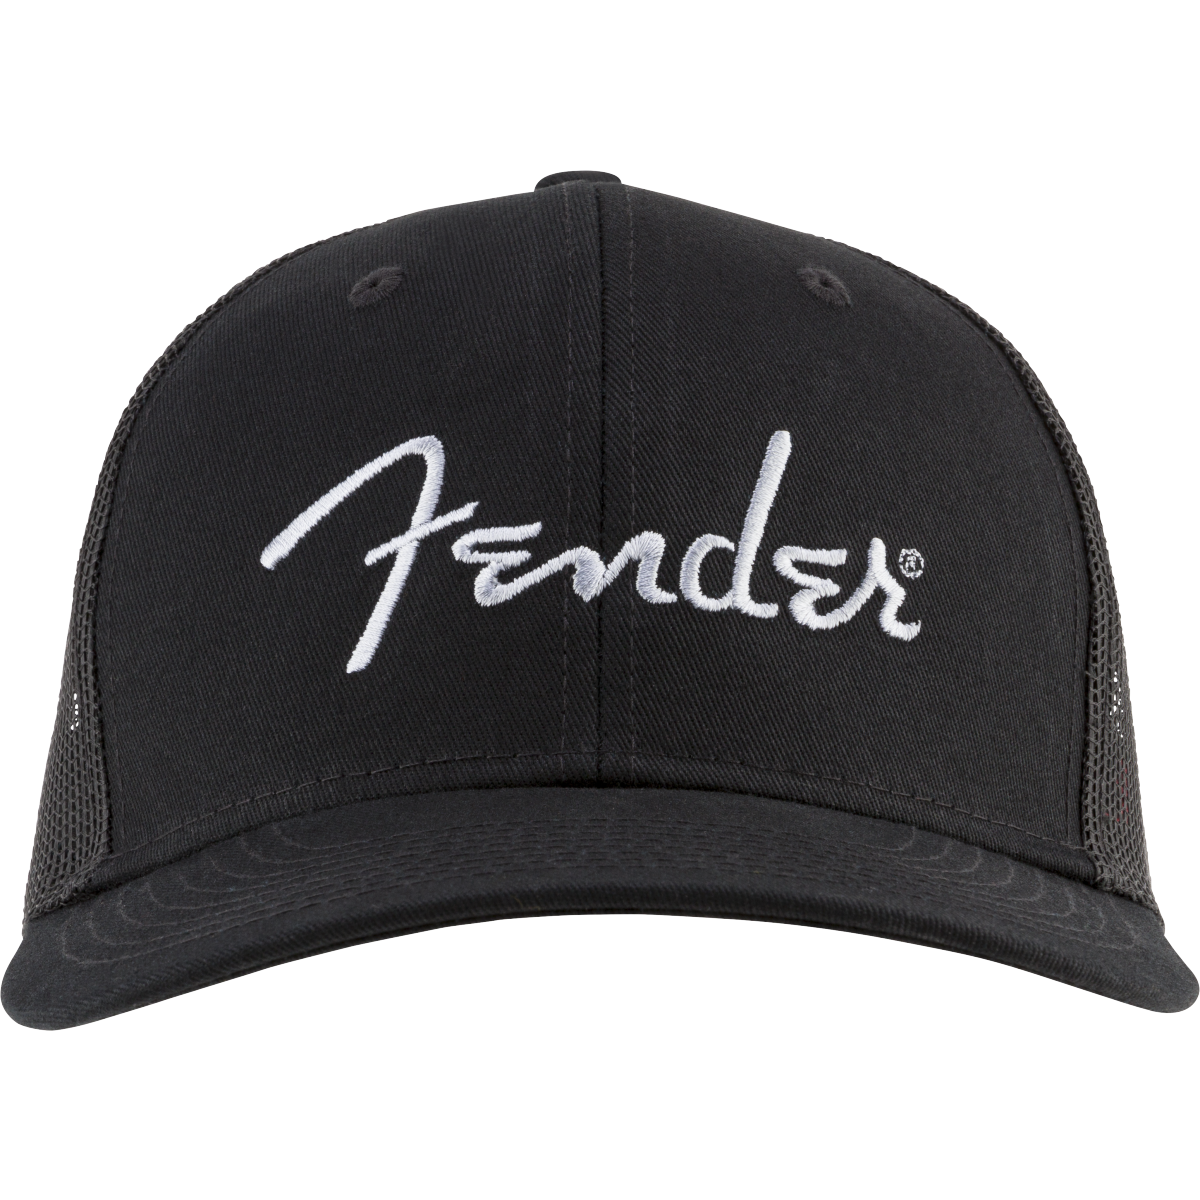 Front of Fender Silver Logo Snapback Hat